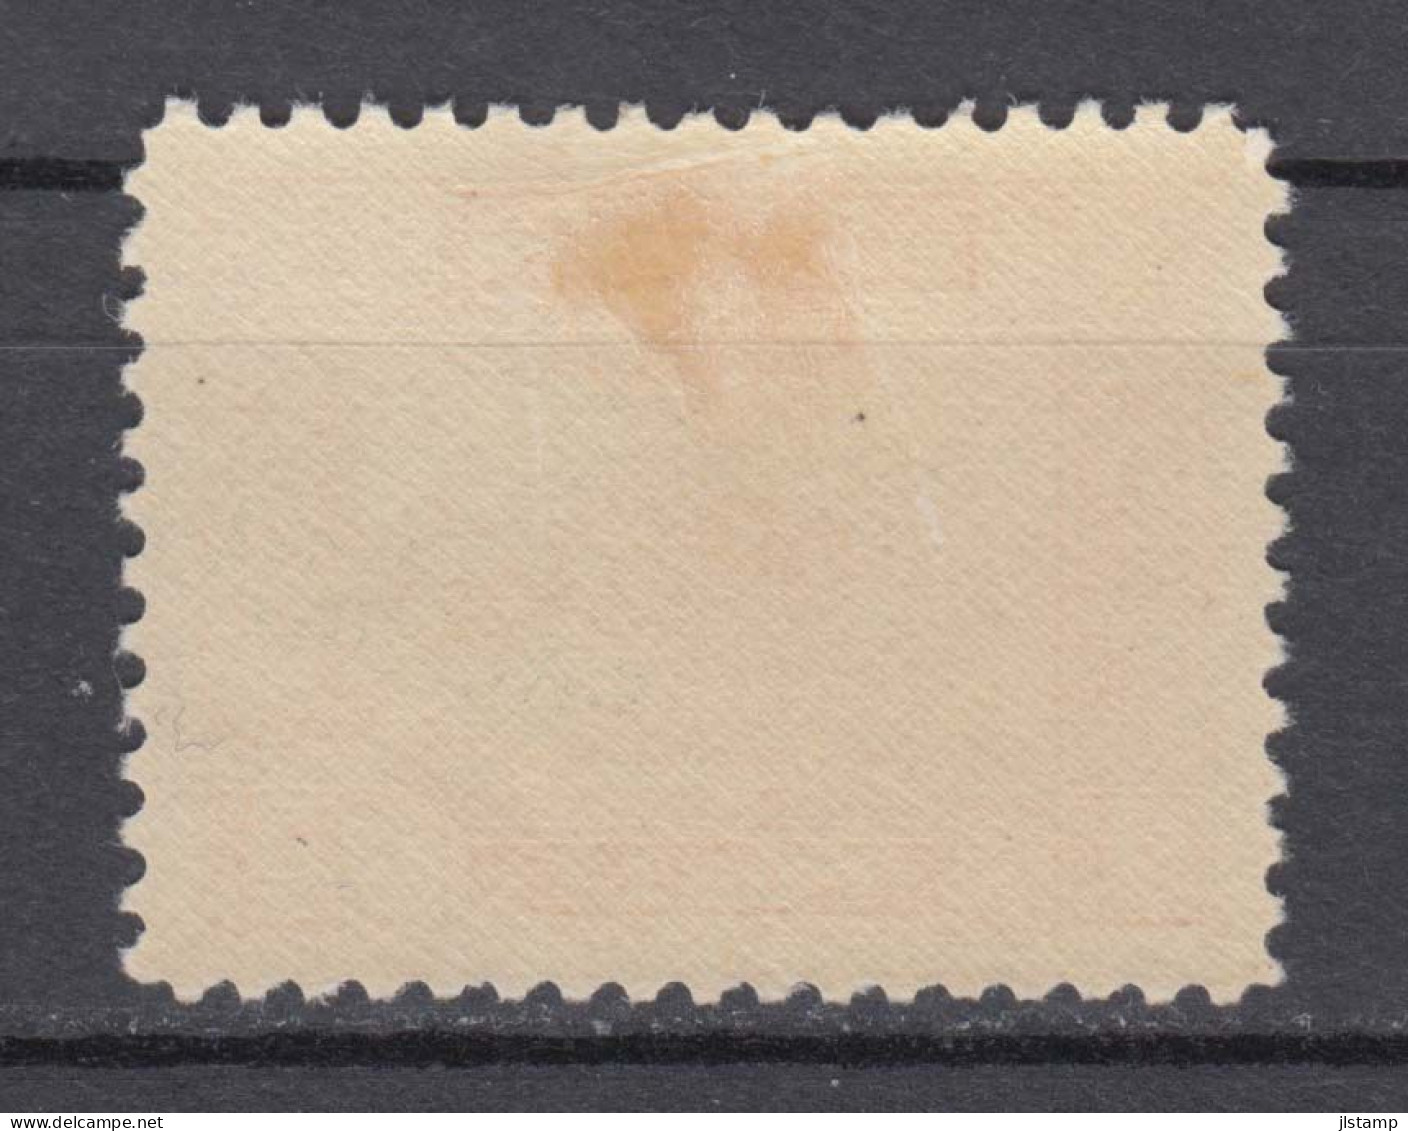 Turkey 1930 Railroad Bridge Stamp,3k,Scott# 688,OG MH,VF - Ongebruikt